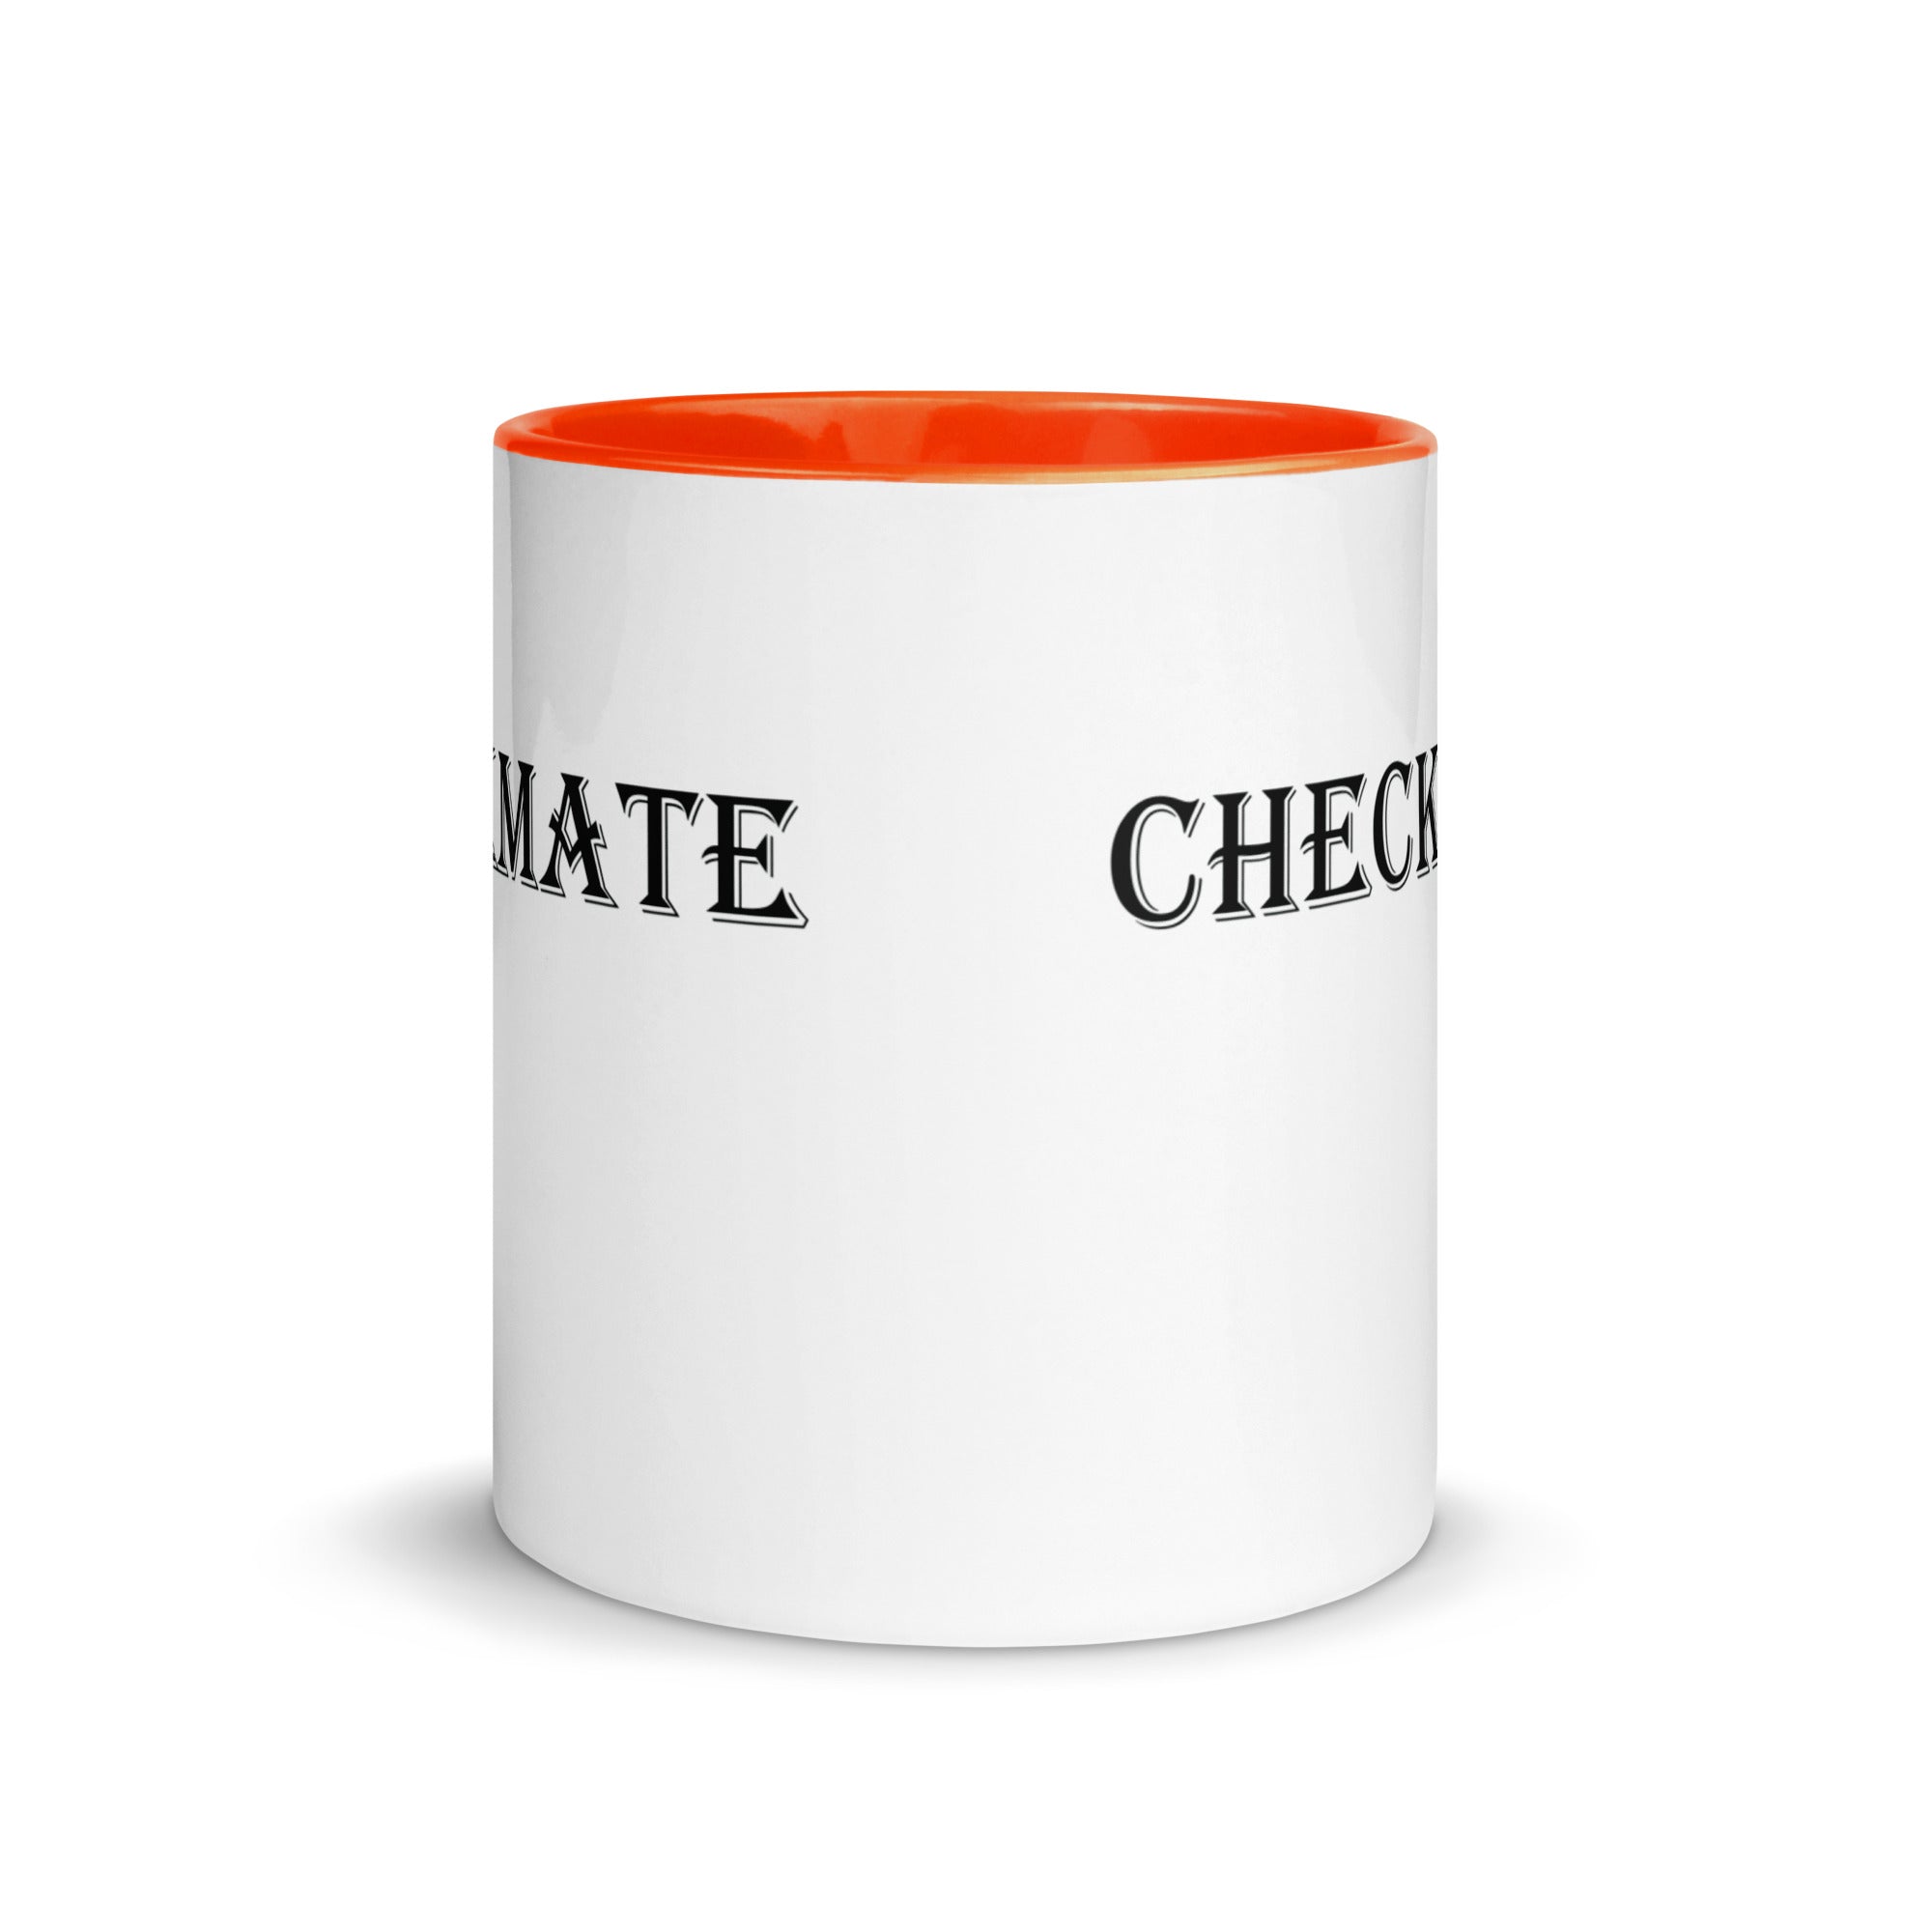 Mug with Color Inside | Checkmate